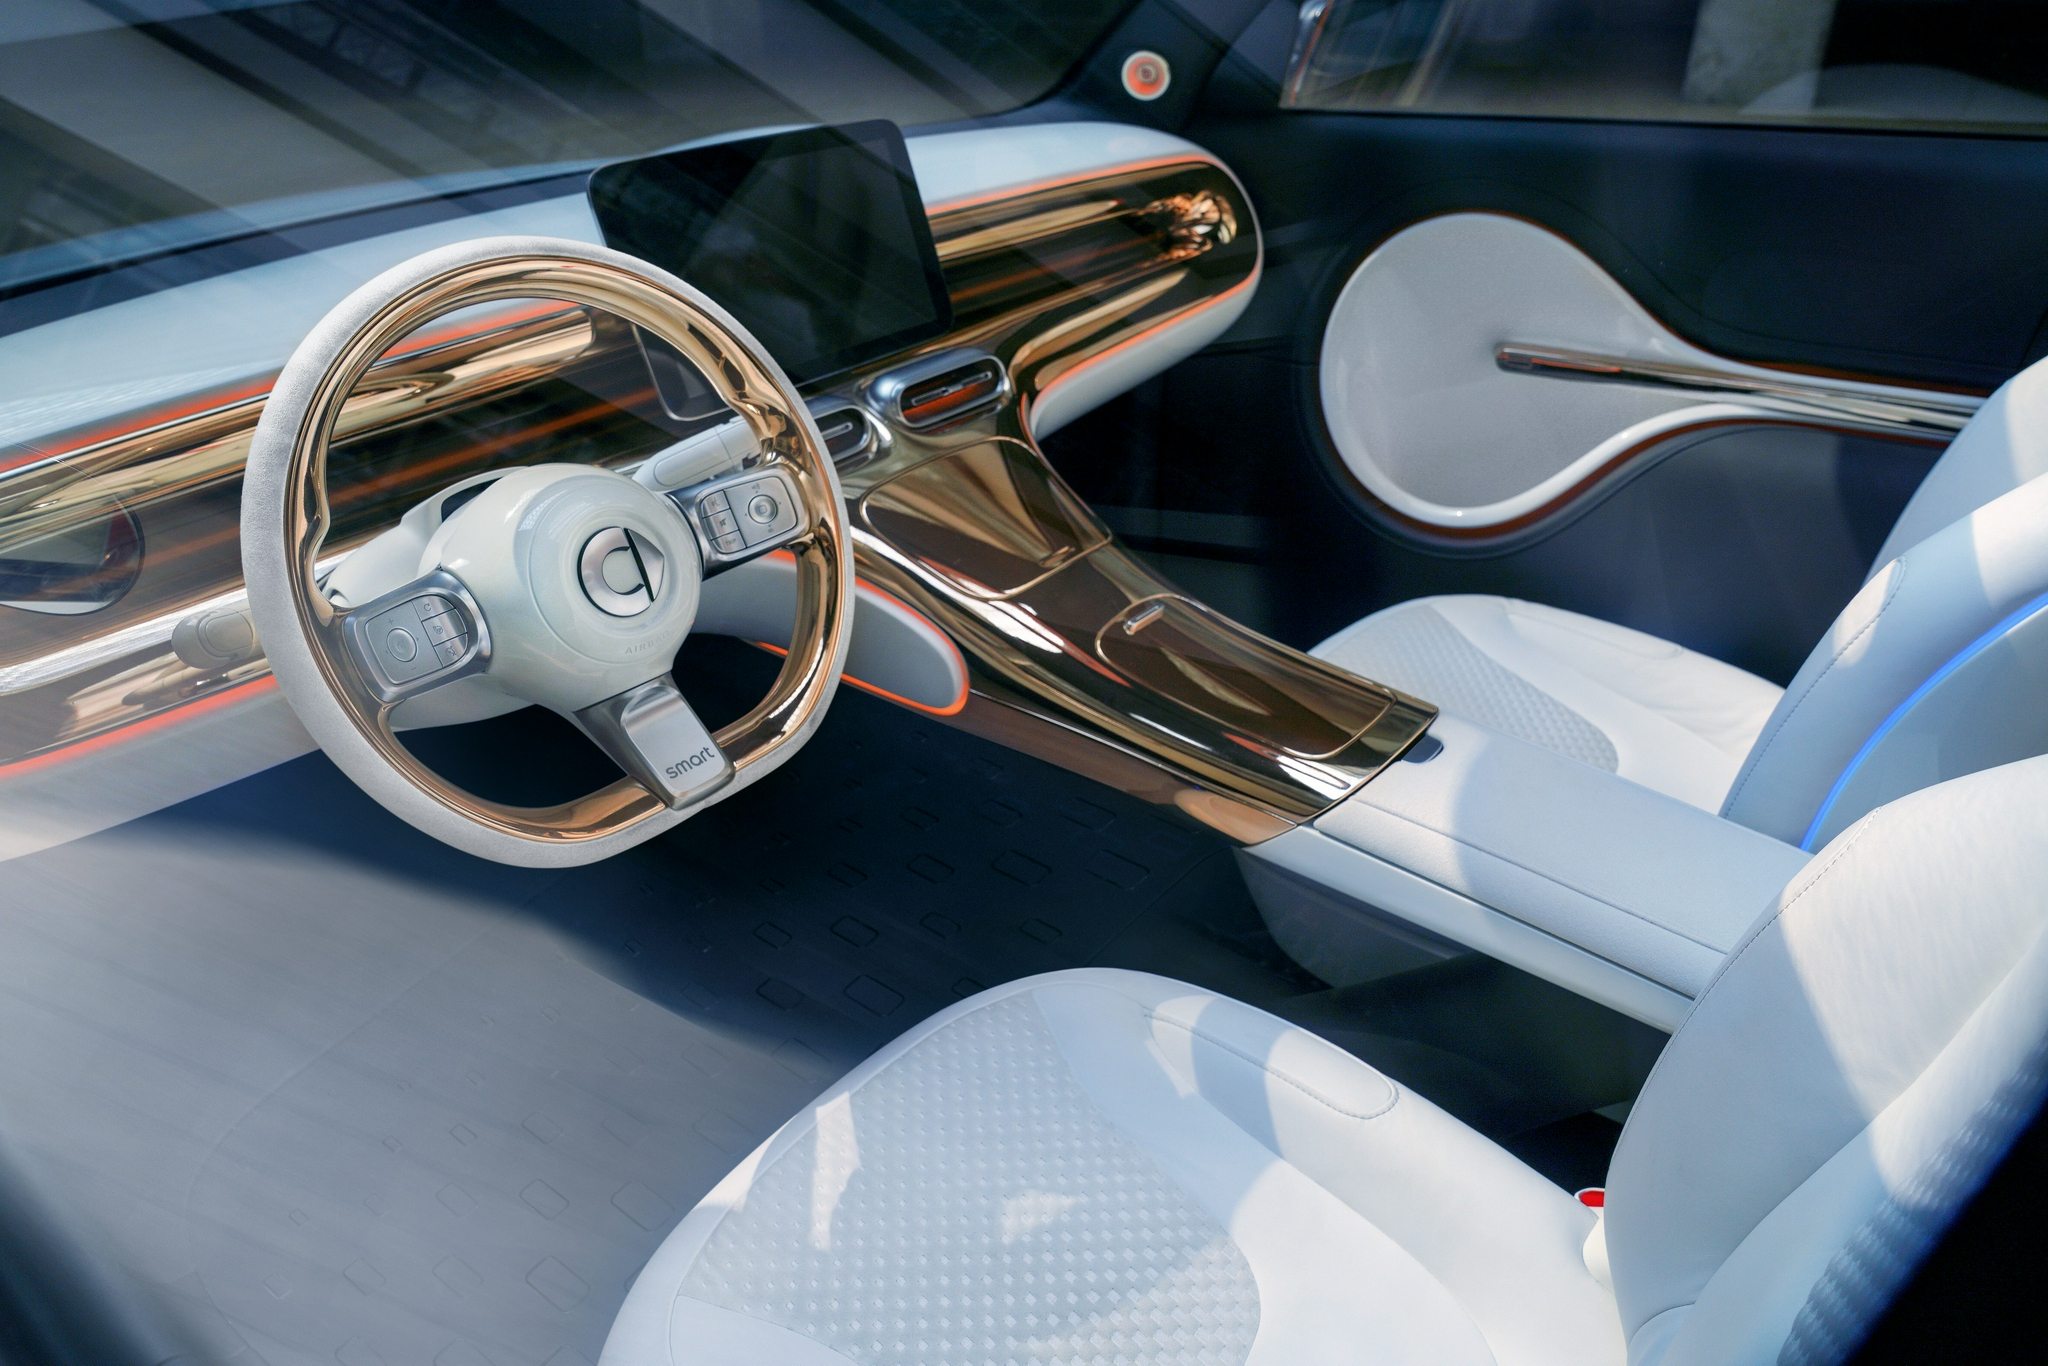 2021慕尼黑车展：全新smart精灵#1概念车全球首秀